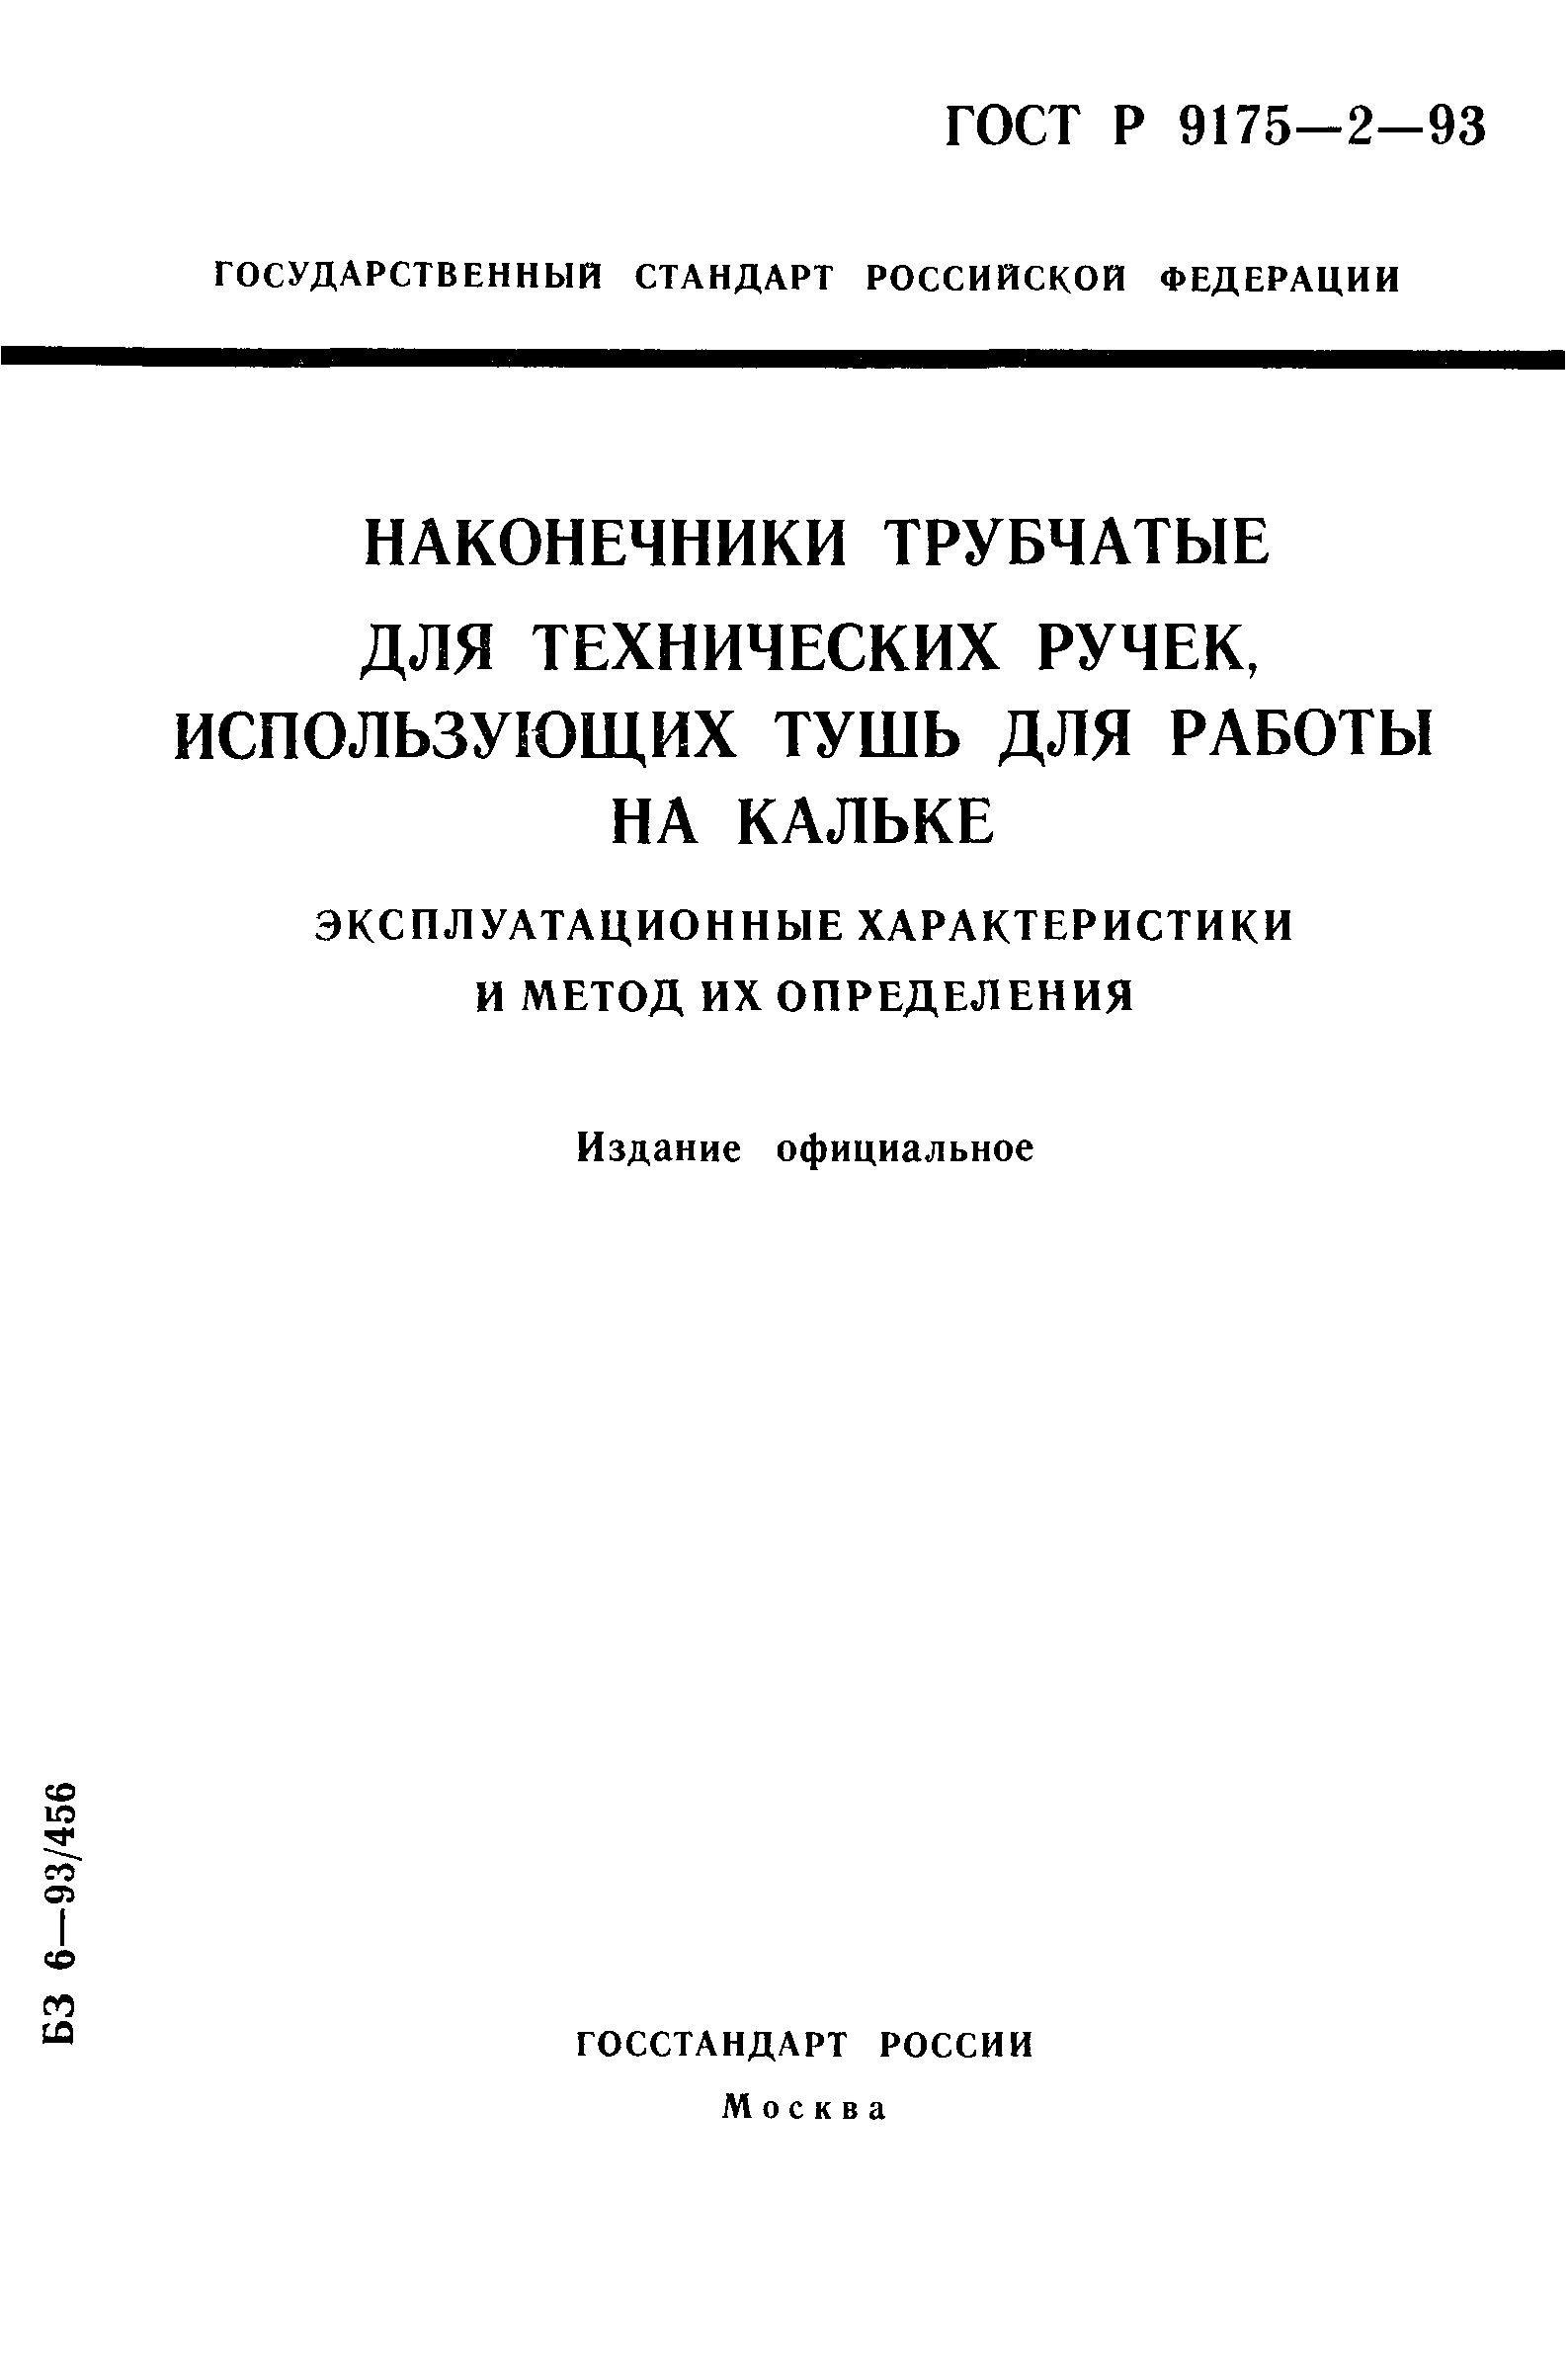 ГОСТ Р ИСО 9175-2-93